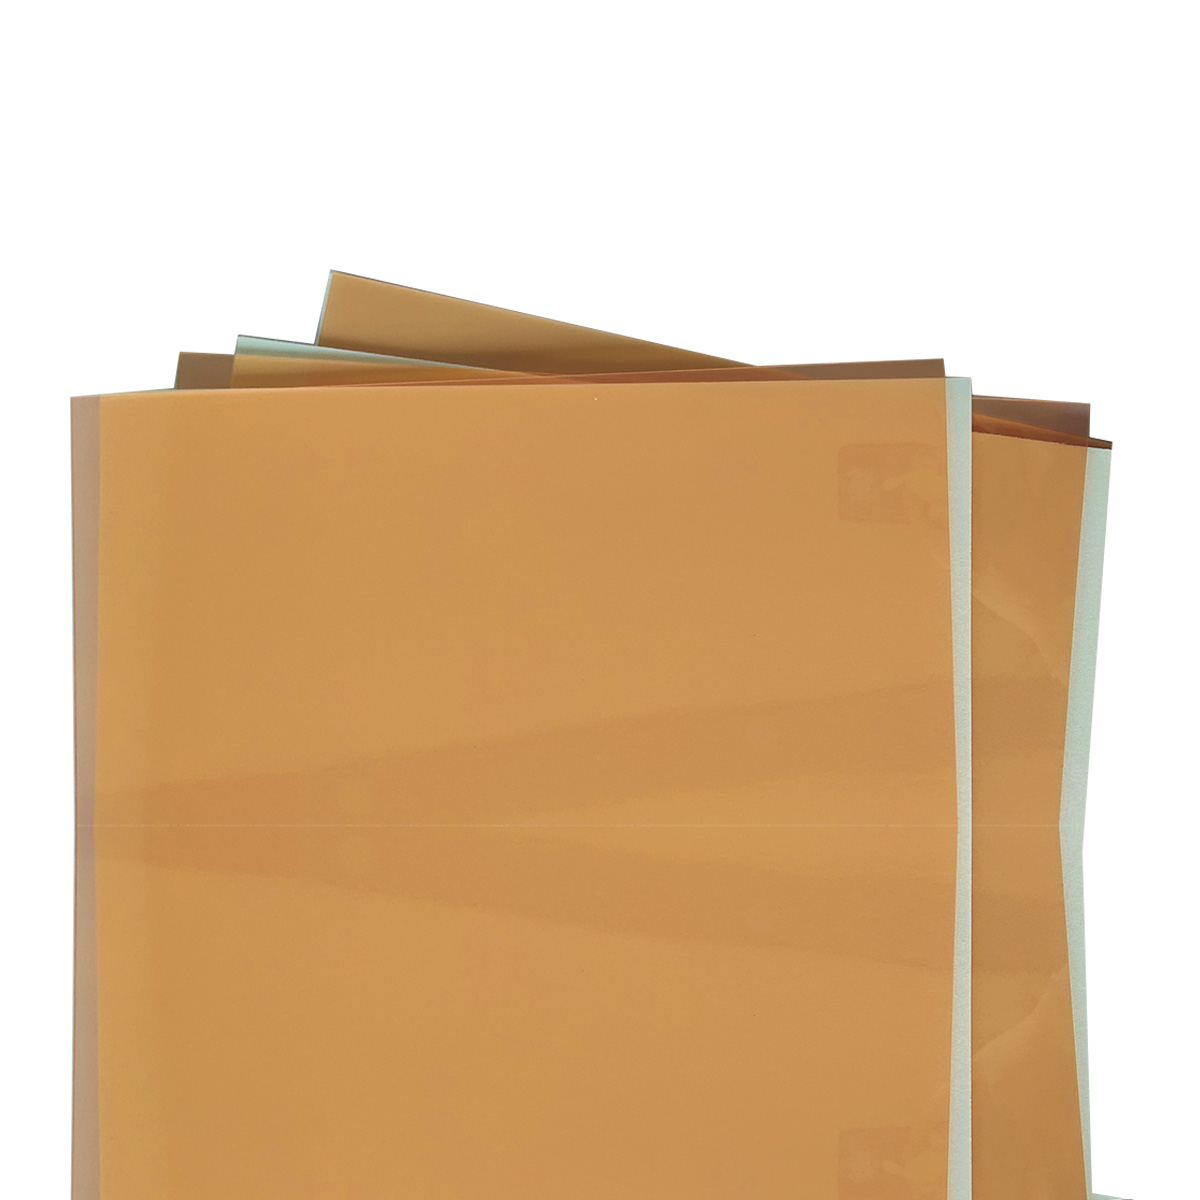 【廠家直銷】傳統柔性感光樹脂版印刷 紙袋印刷 硬瓦楞紙箱